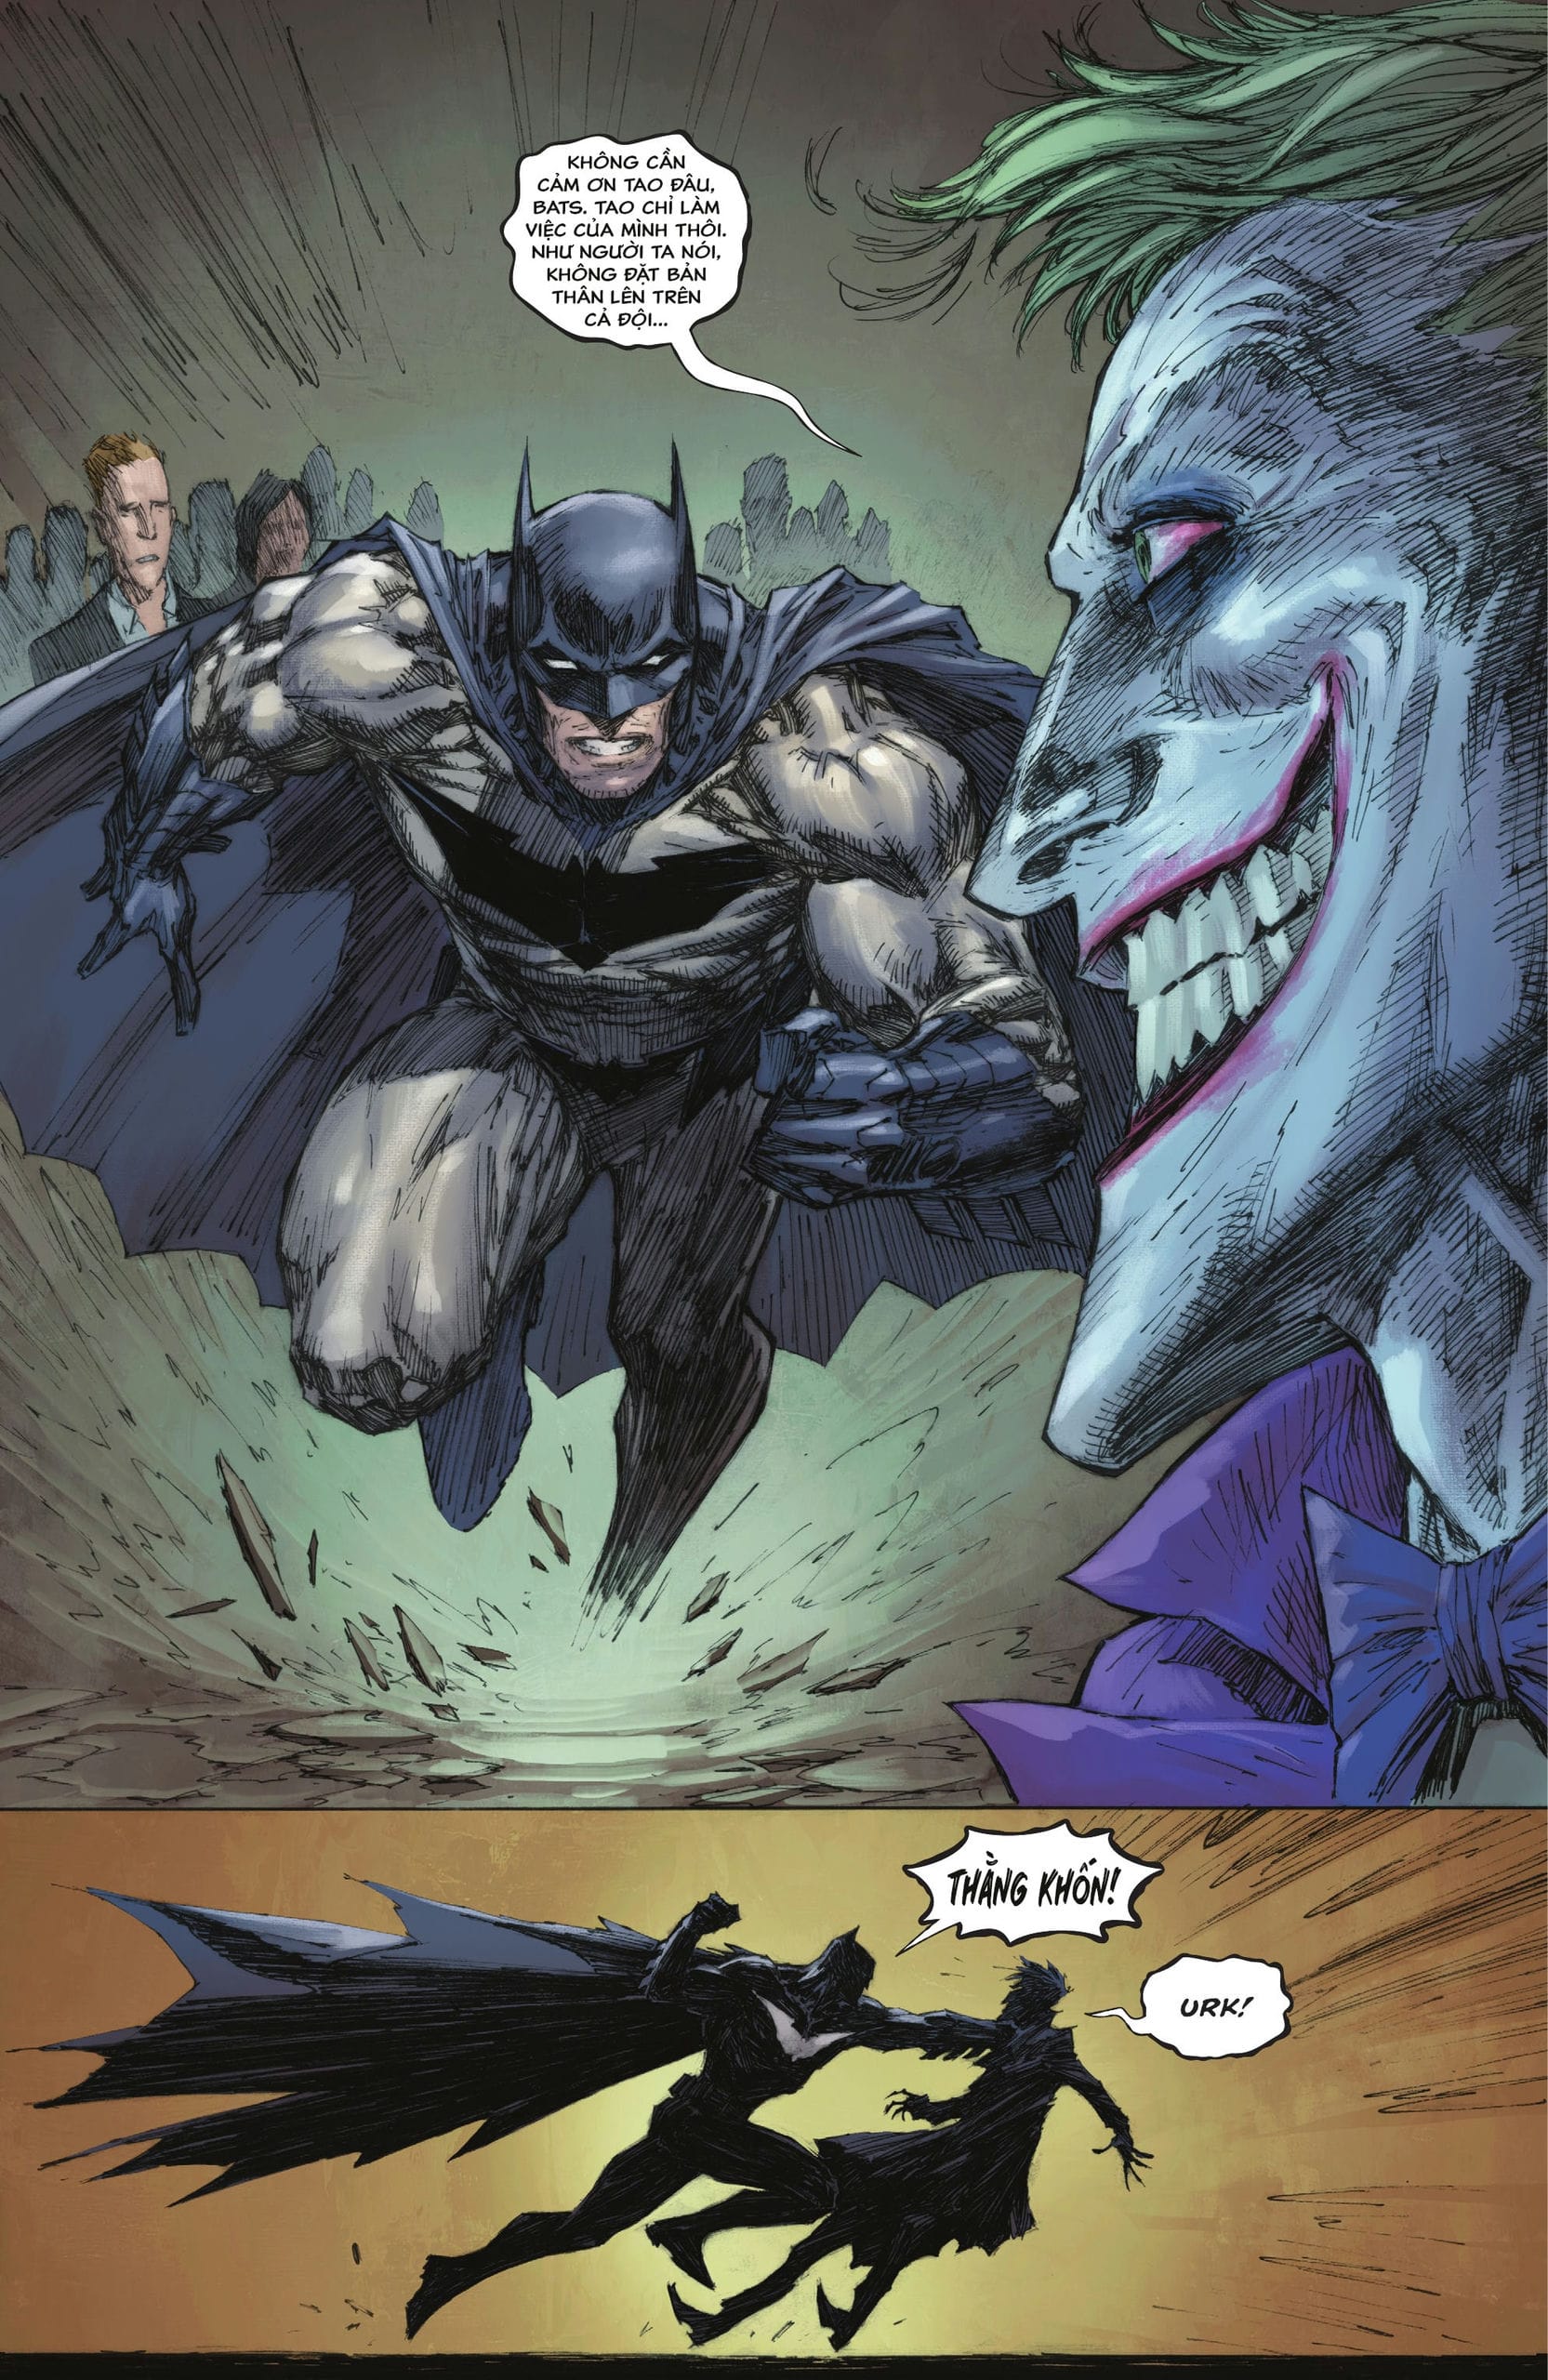 https://langgeek.net/wp-content/webpc-passthru.php?src=https://langgeek.net/wp-content/uploads/2023/02/Batman-The-Joker-The-Deadly-Duo-2022-004-021.jpg&nocache=1